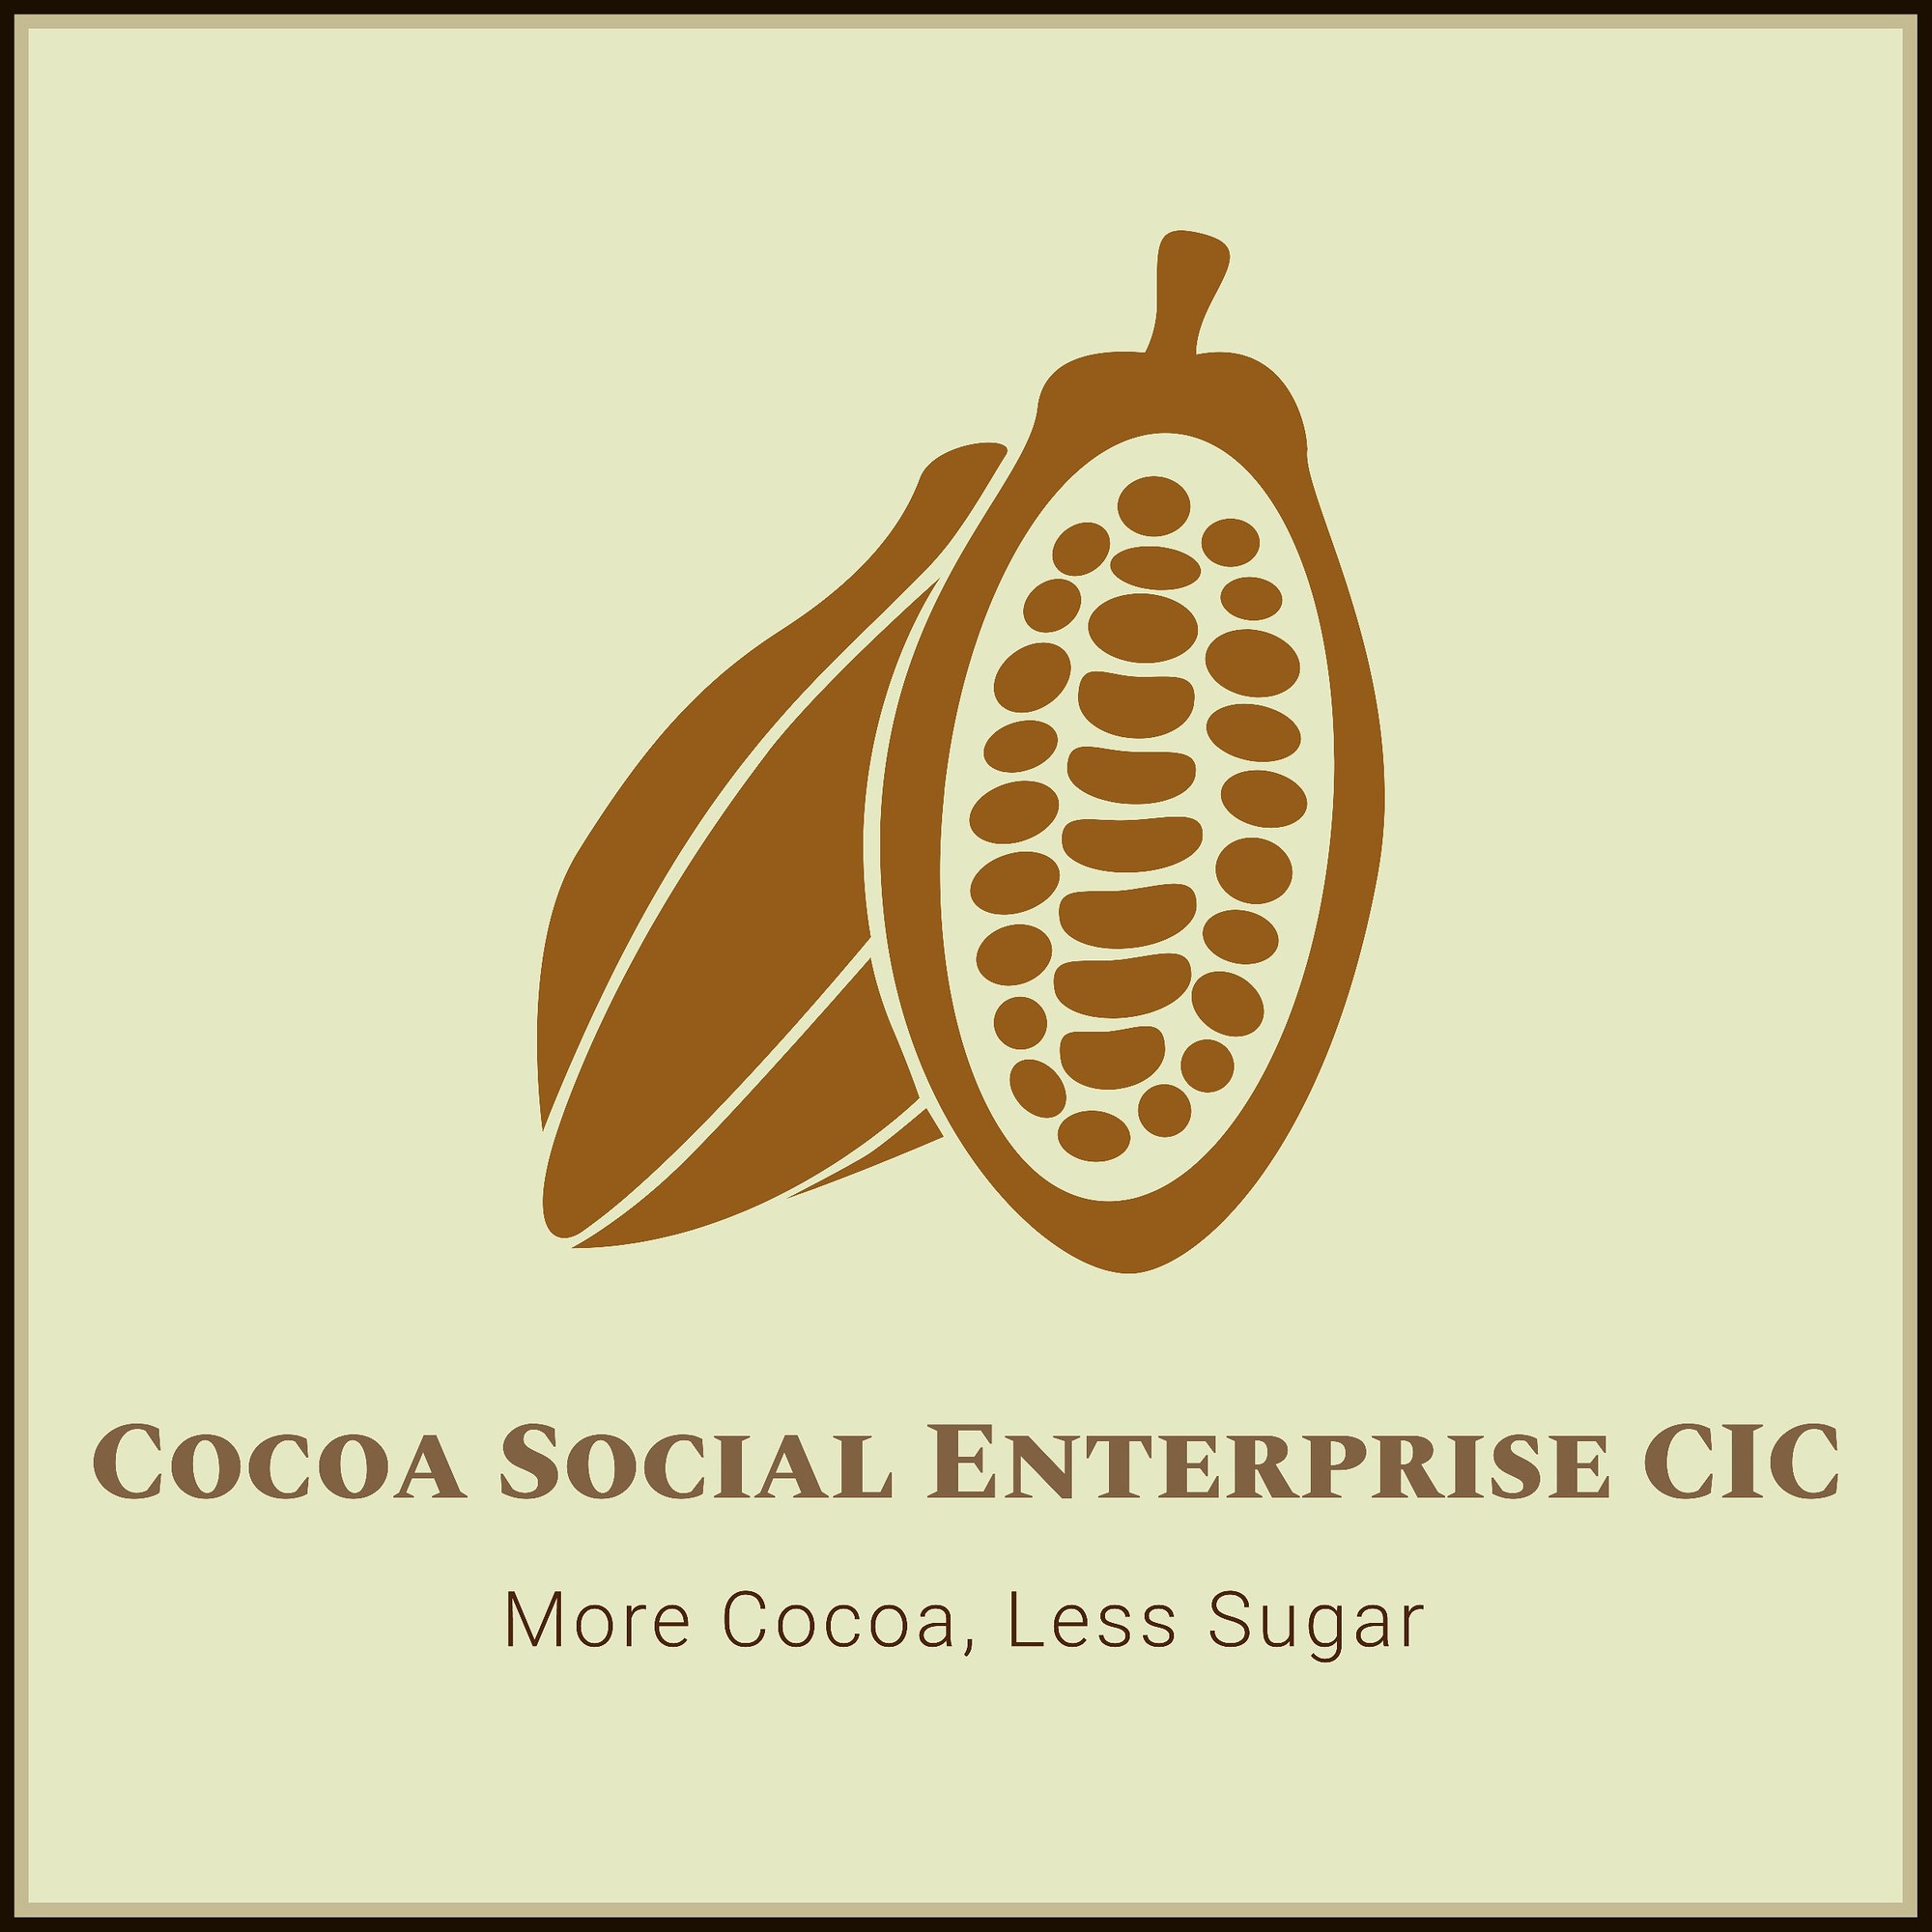 Cocoa Social Enterprise CIC